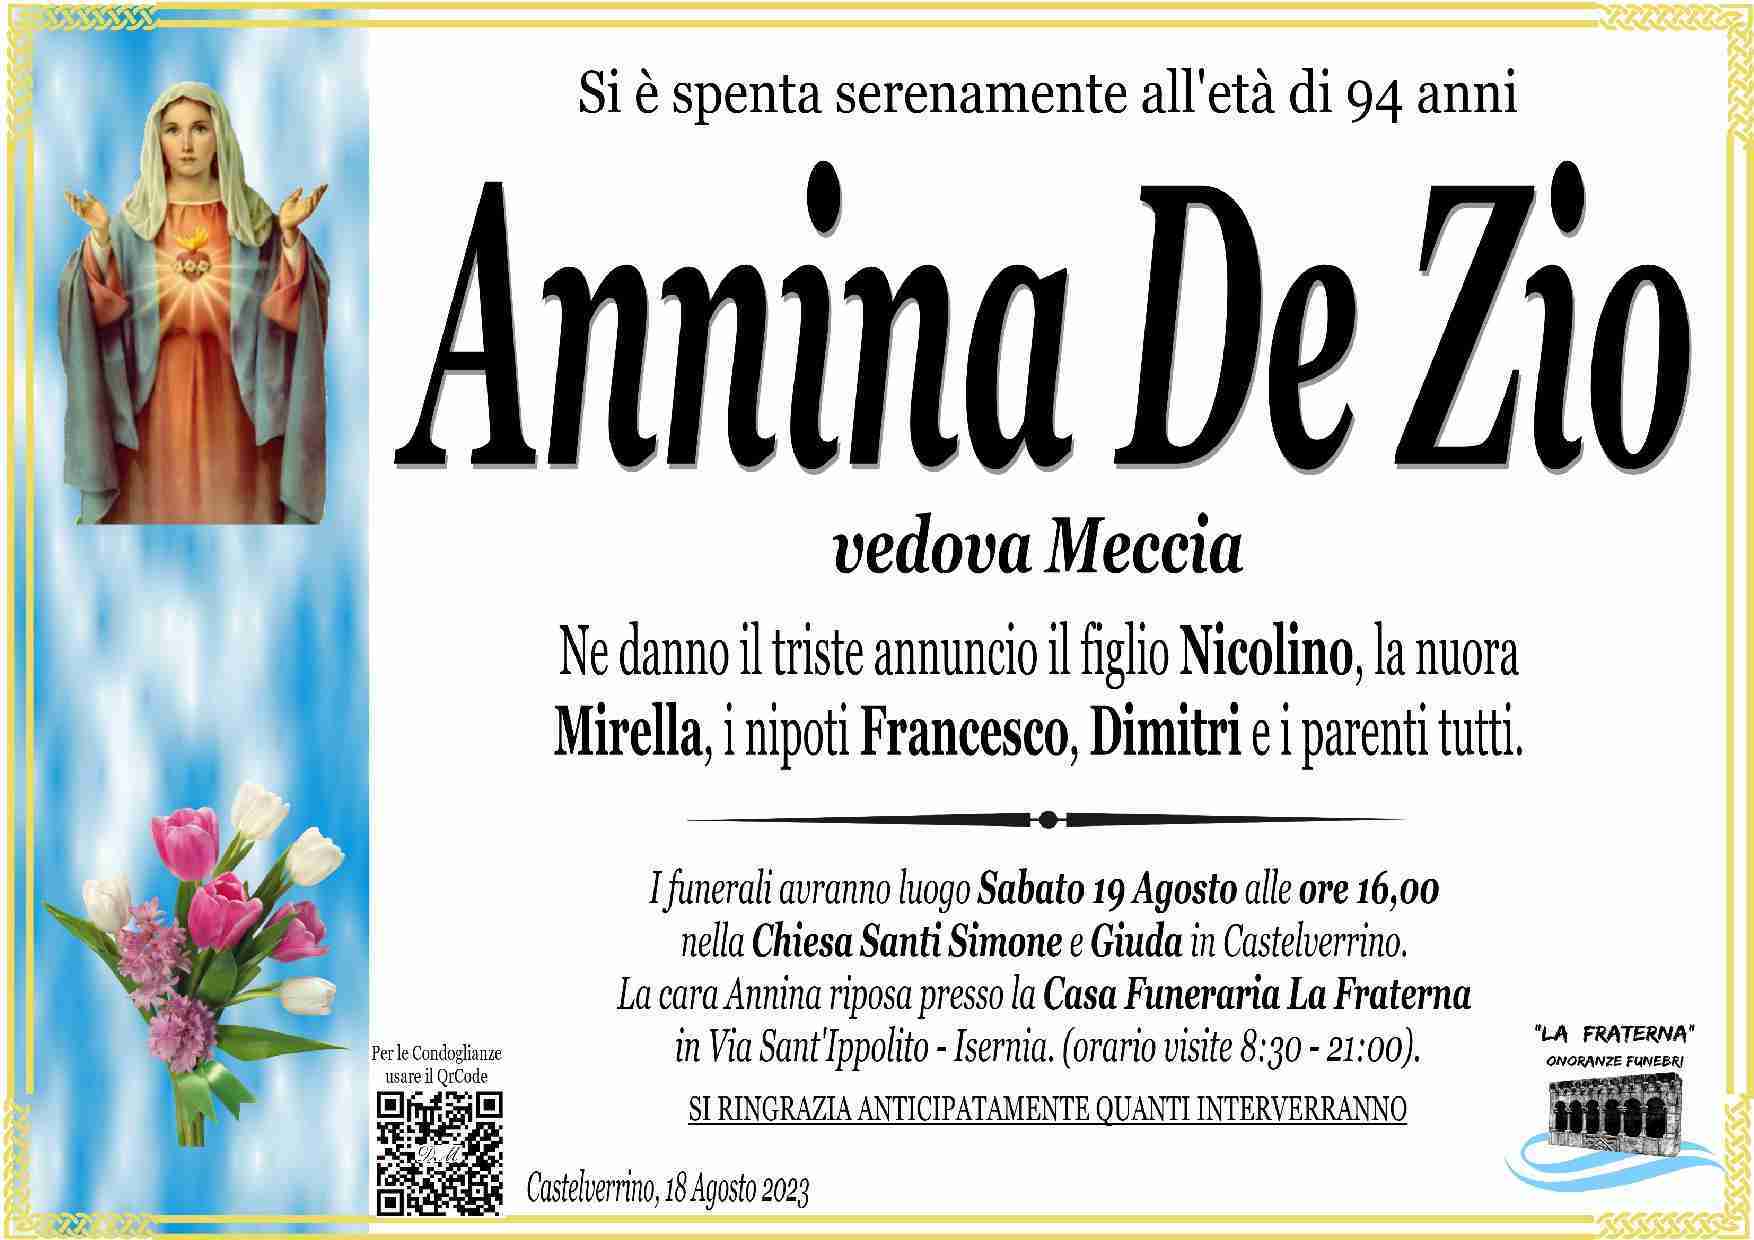 Annina De Zio